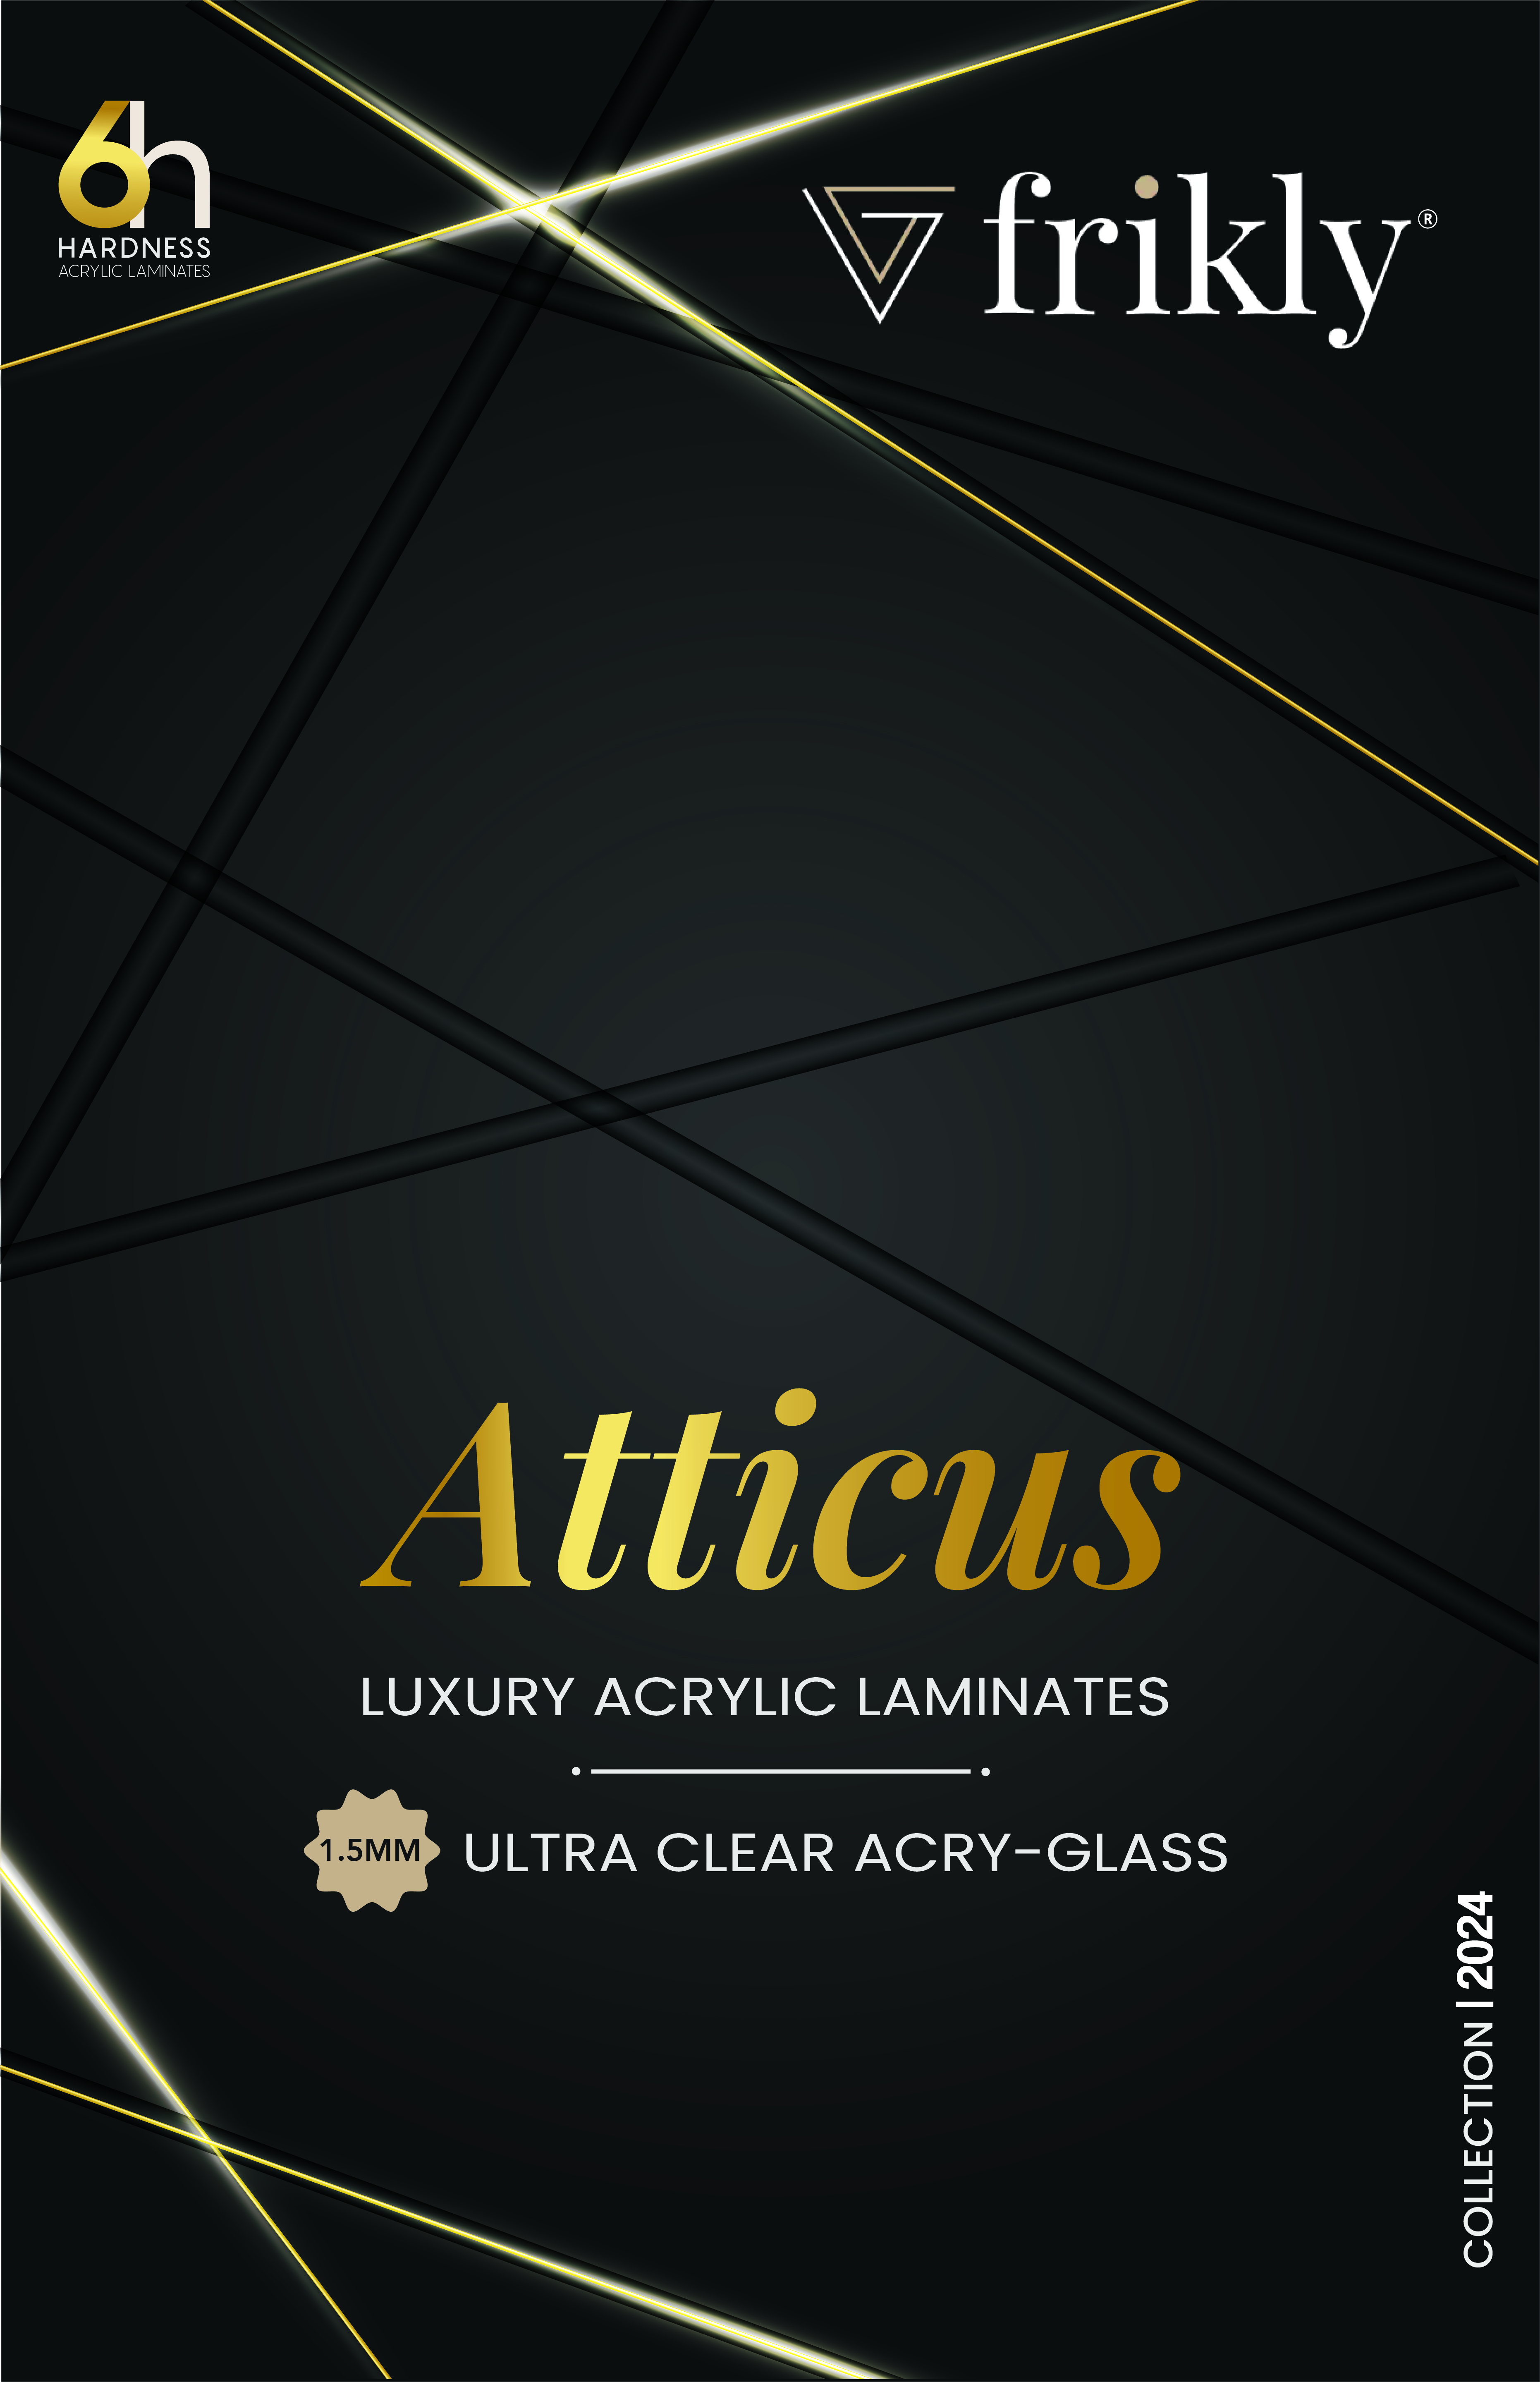 Atticus Elegance Frikly Premium Laminates Redefining Style and Durability